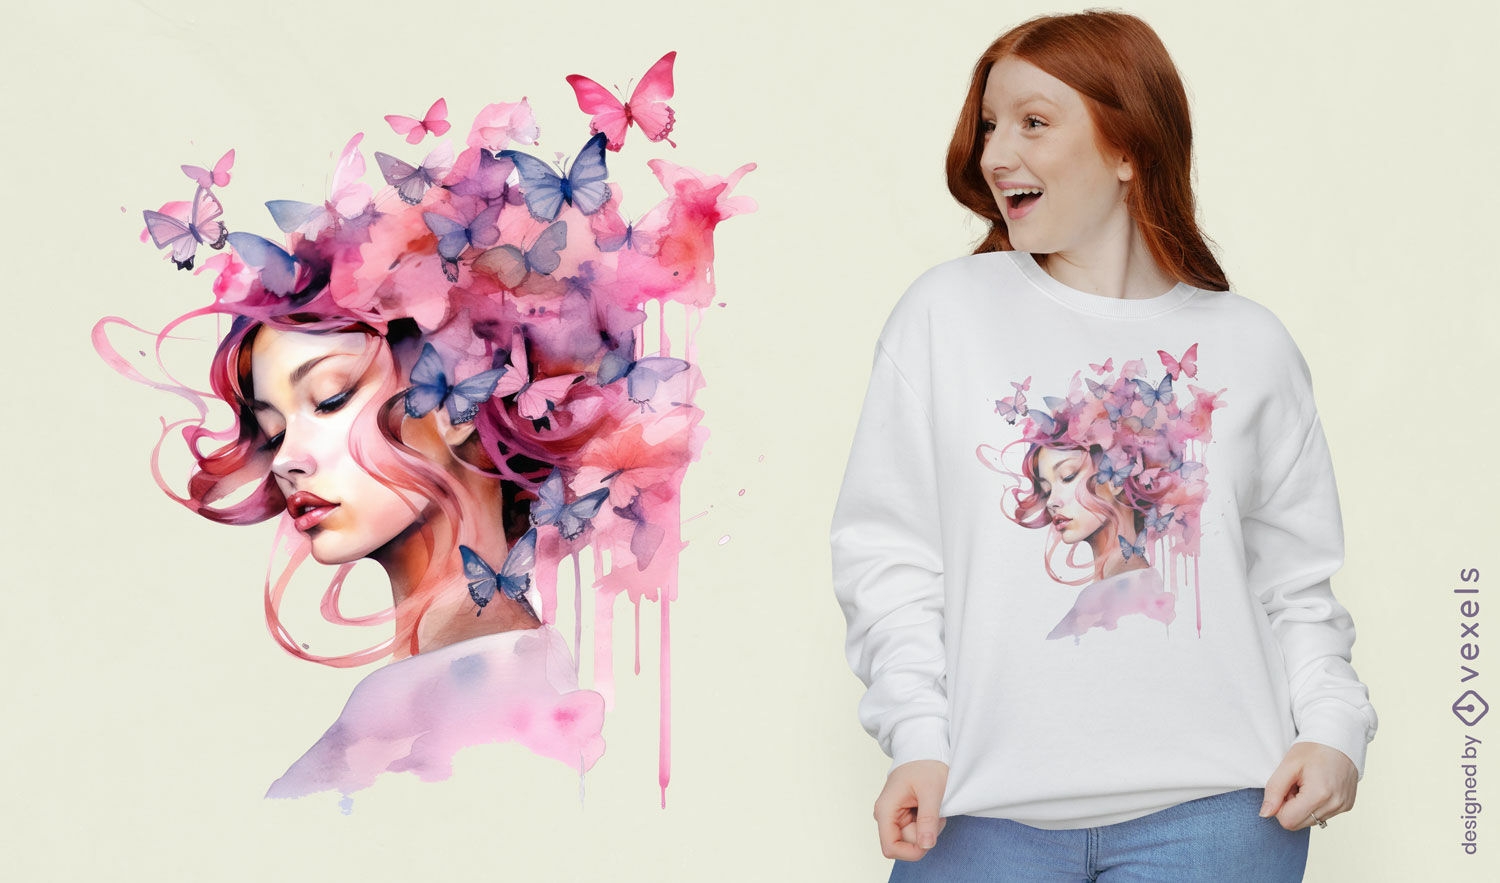 Woman with butterflies t-shirt design